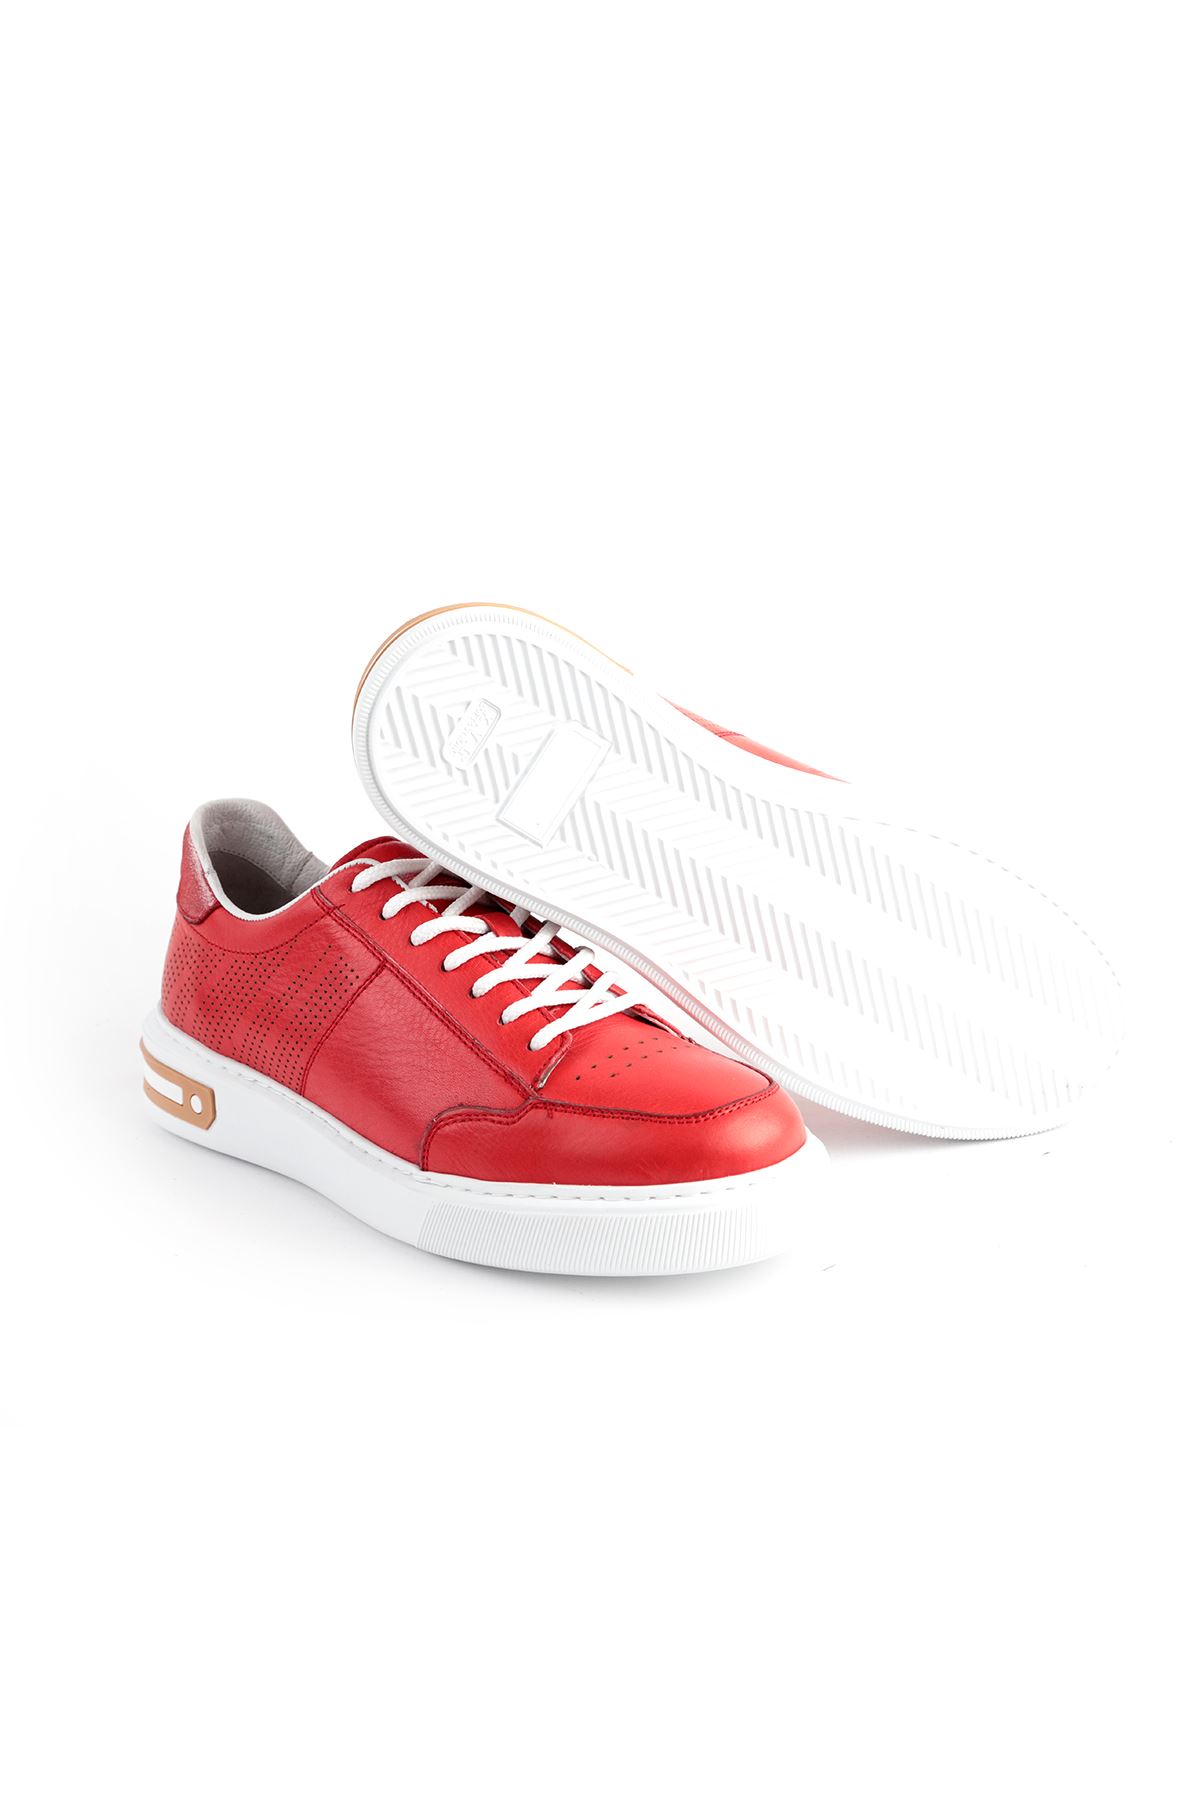 Libero Dİ2034 Kırmızı Spor Ayakkabı 